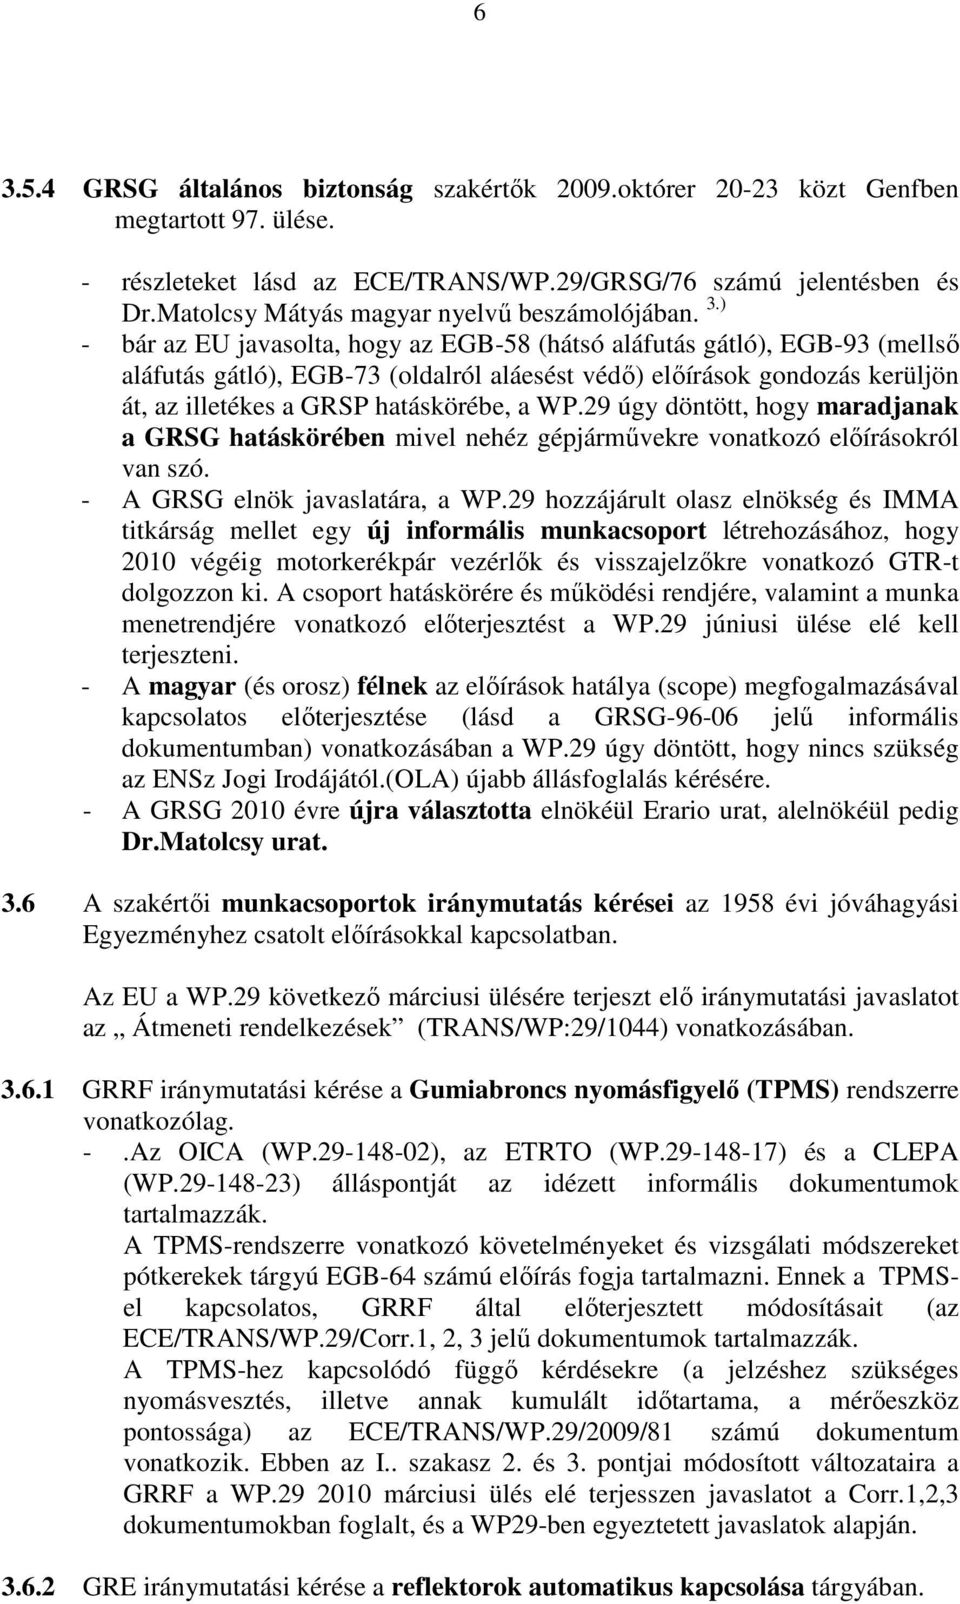 ) - bár az EU javasolta, hogy az EGB-58 (hátsó aláfutás gátló), EGB-93 (mellsı aláfutás gátló), EGB-73 (oldalról aláesést védı) elıírások gondozás kerüljön át, az illetékes a GRSP hatáskörébe, a WP.